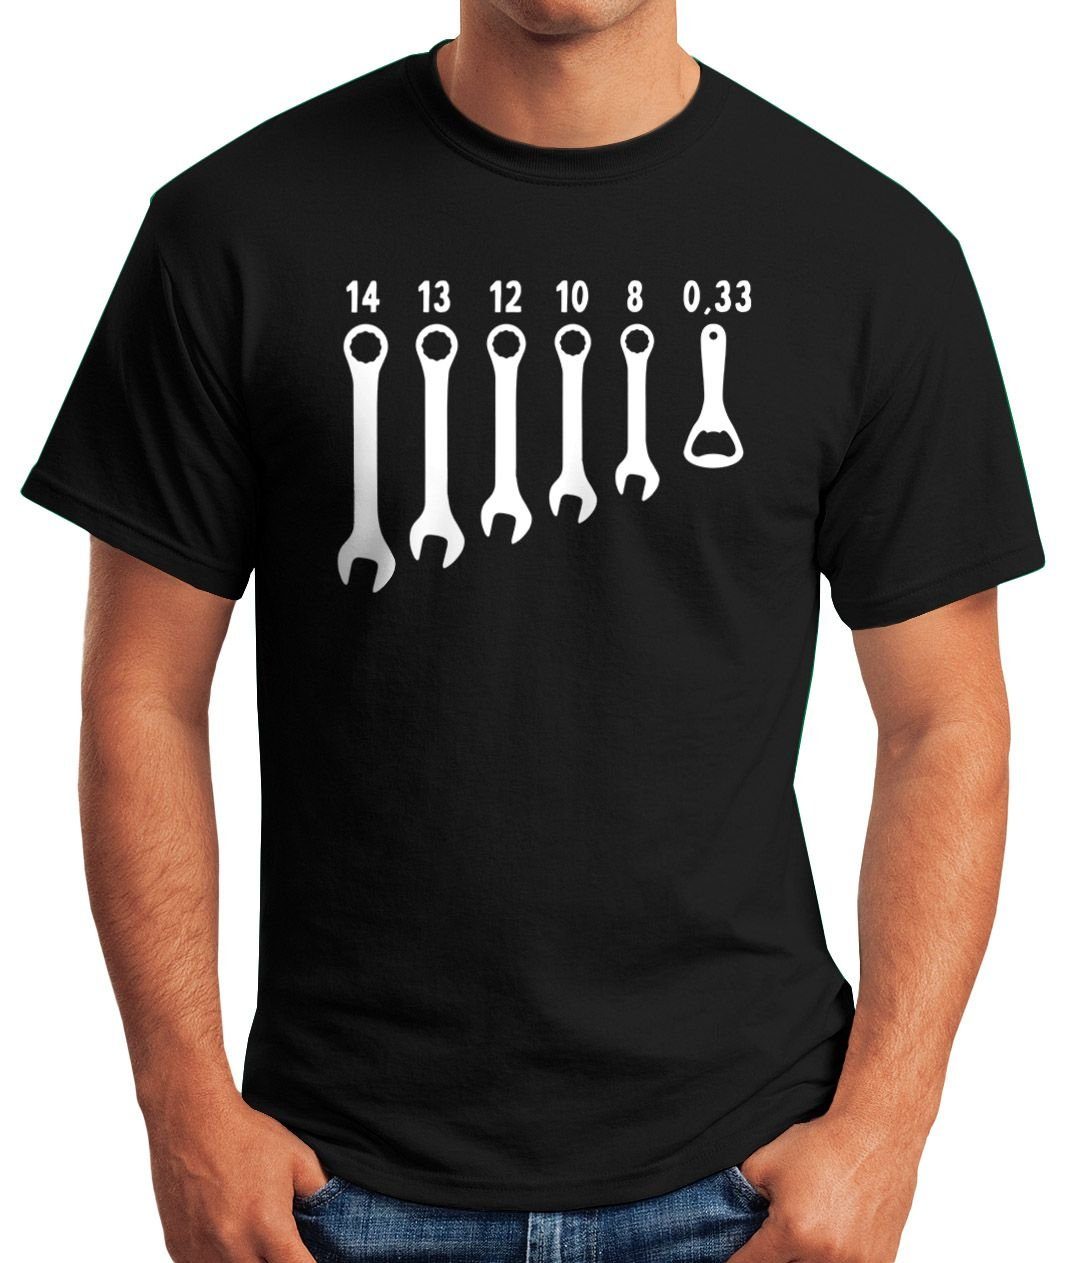 MoonWorks Moonworks® Fun-Shirt Flaschenöffner Schraubenschlüssel schwarz T-Shirt Herren Fun-Shirt mit Print-Shirt Herren Bieröffner Print